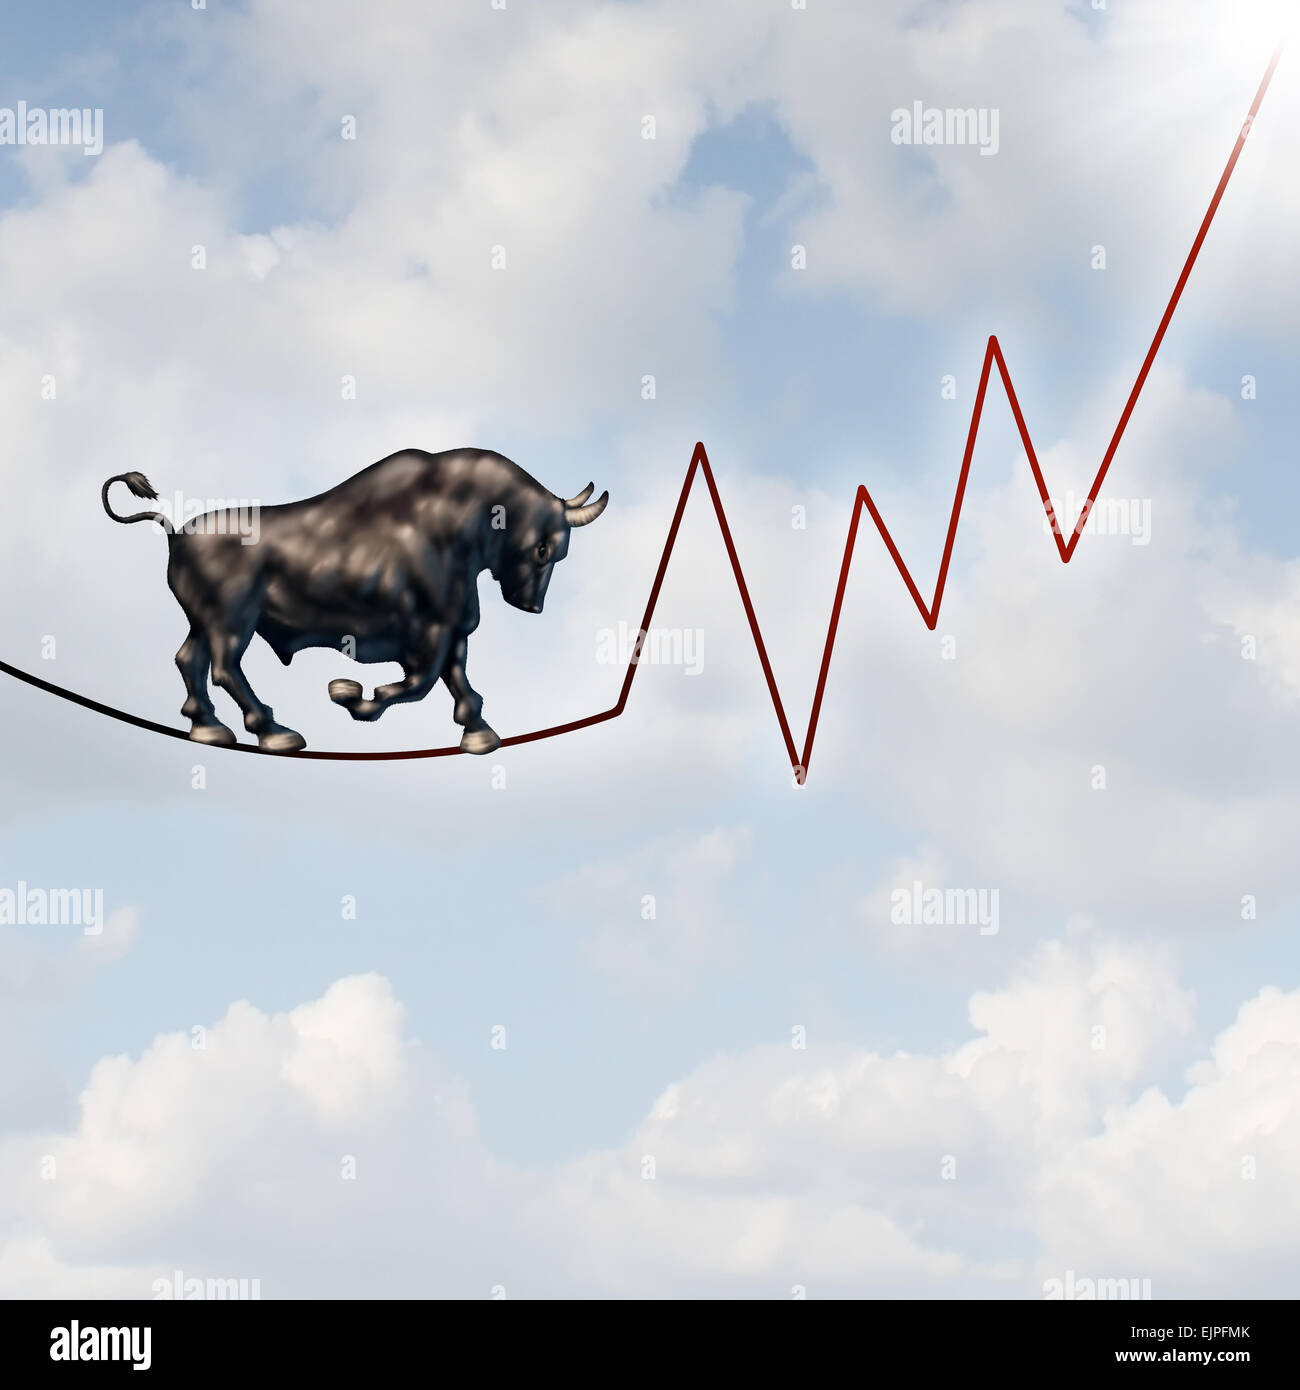 Risque de marché Bull concept financier comme une bête haussière lourde marche sur un fil en forme de bourse graphique sans but lucratif représentant le danger d'investissement à venir. Banque D'Images